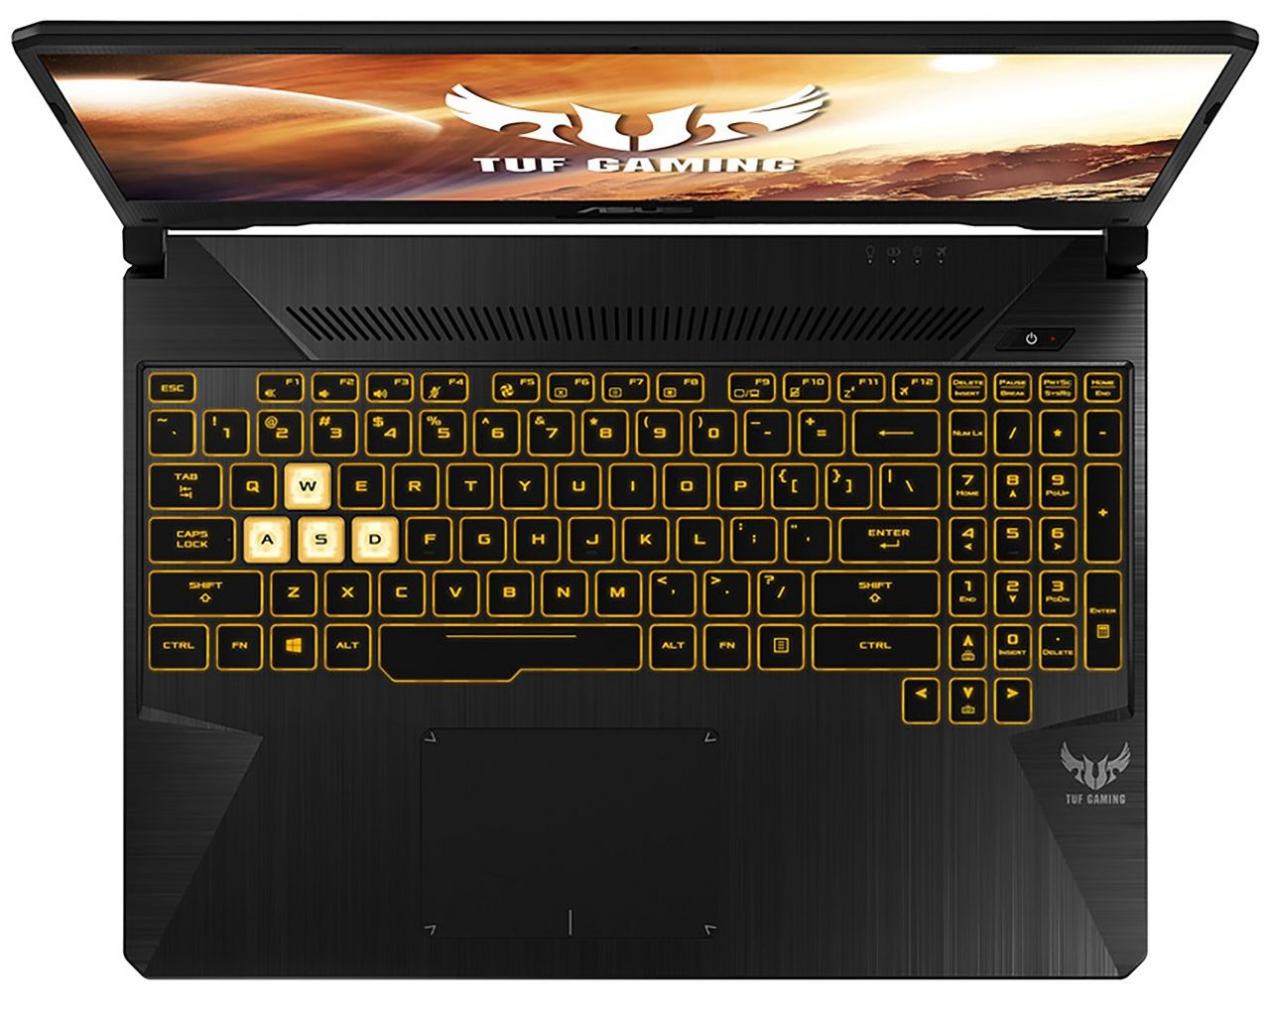 ASUS TUF Gaming FX505DV - test gamingowego laptopa na Ryzenie i RTX 2060